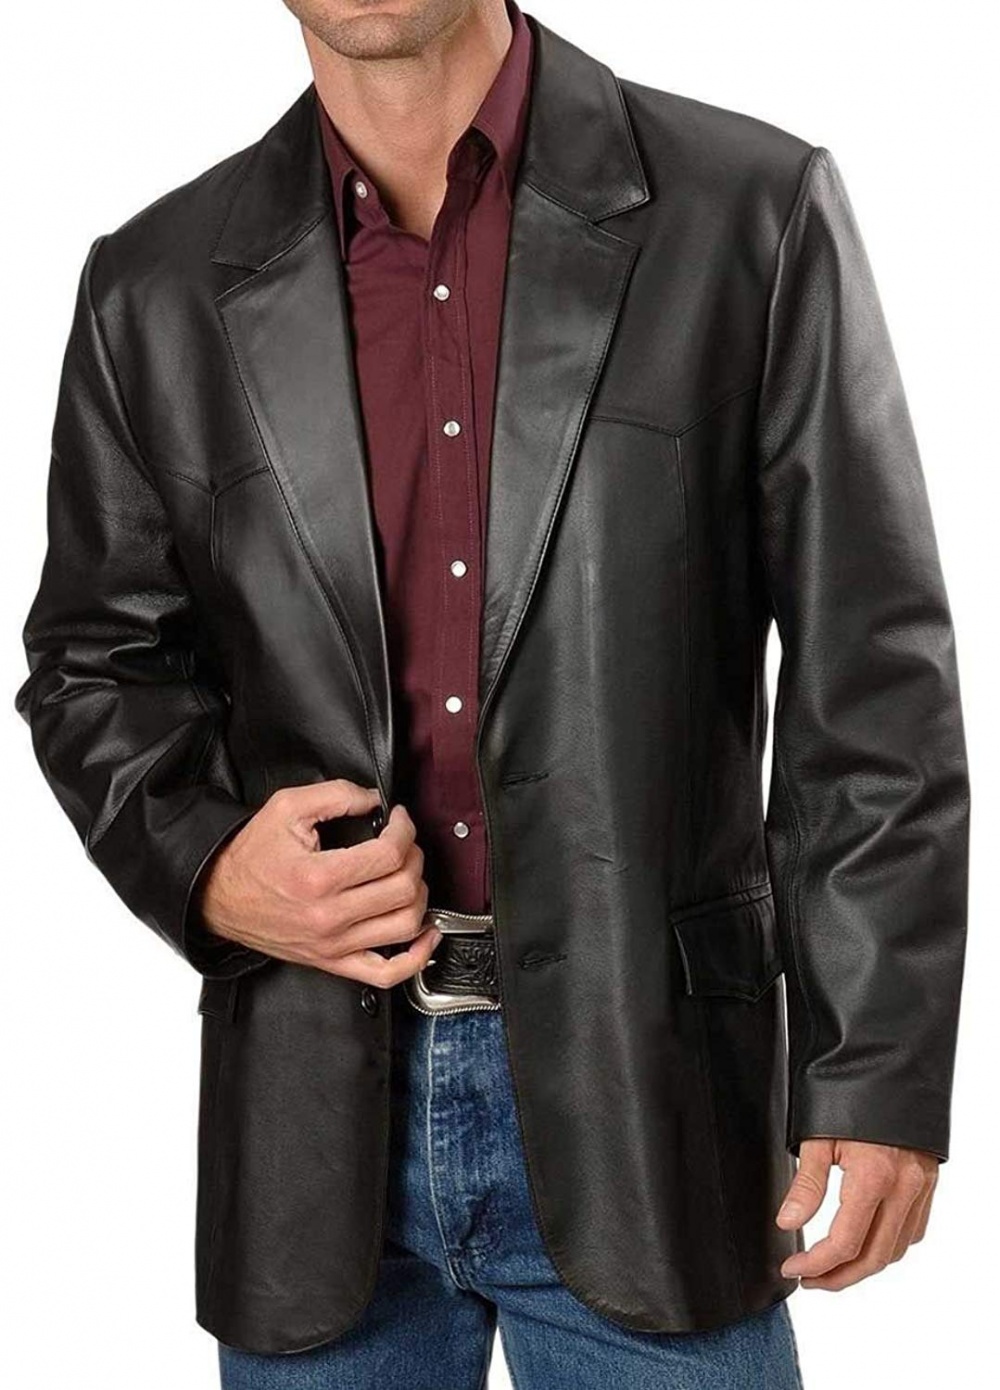 Мужской пиджак натуральная кожа. Кожаный пиджак мужской MNG man. Пиджак кожаный мужской стильный. Пиджак из кожи мужской. Кожаная куртка пиджак мужская.